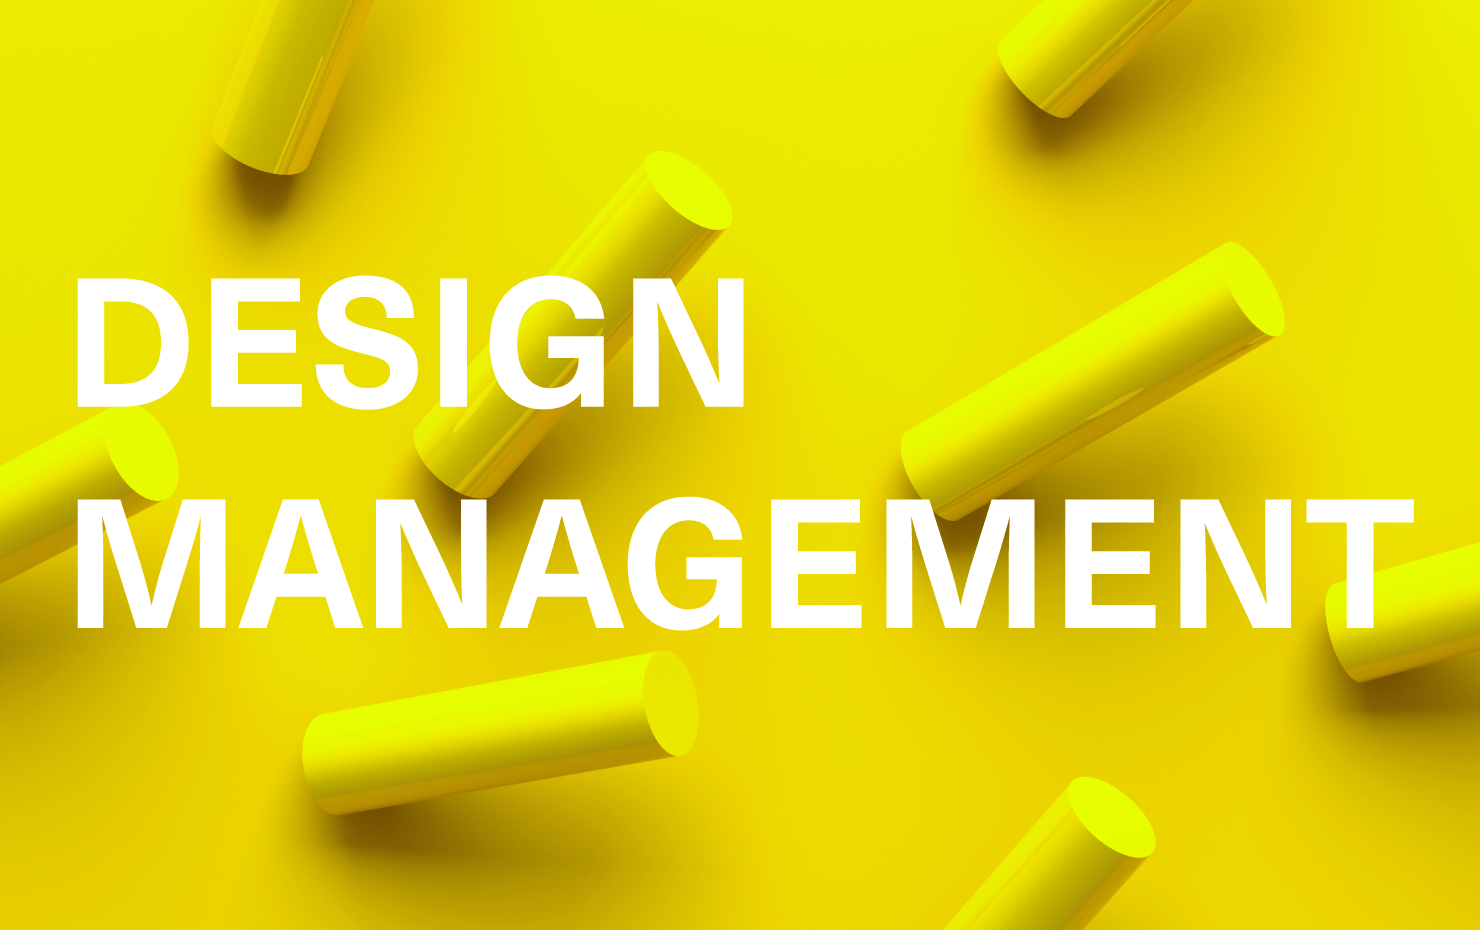 中央に「DESIGN MANAGEMENT」のタイトルがある。黄色を基調とした背景には、円柱が不規則に並ぶ3Dグラフィックス。